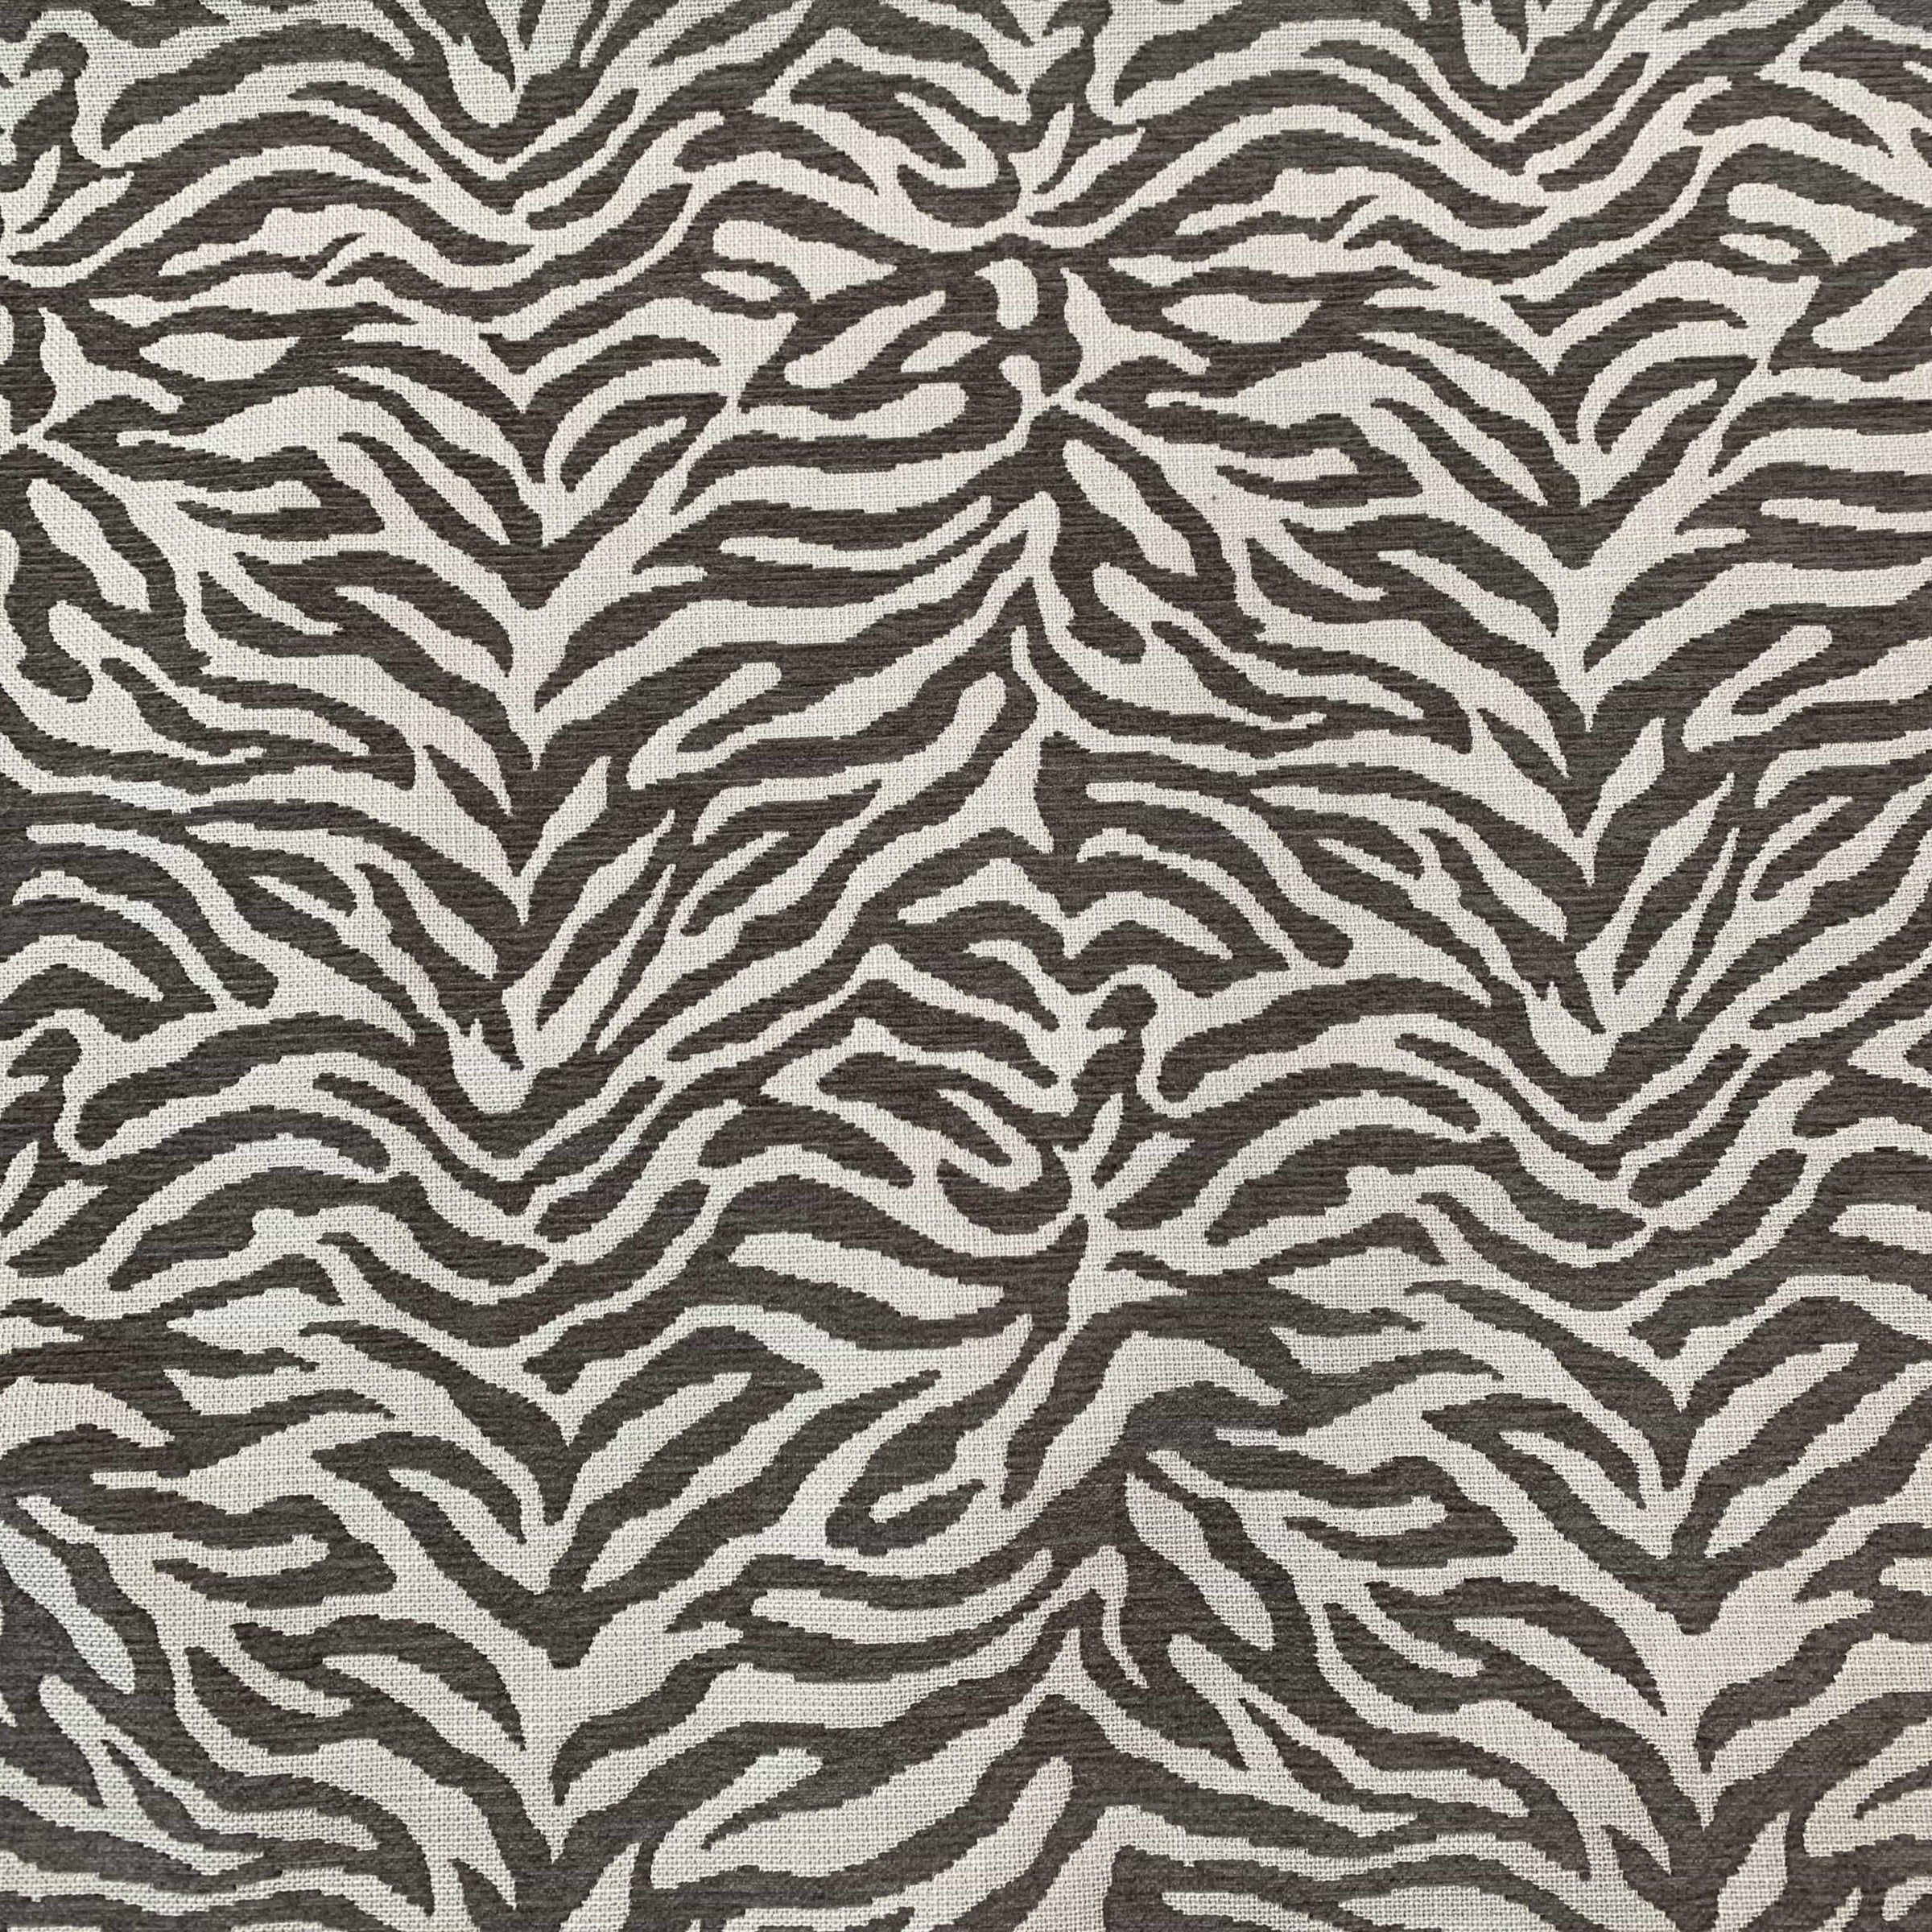 Fuzzy Stone Zebra